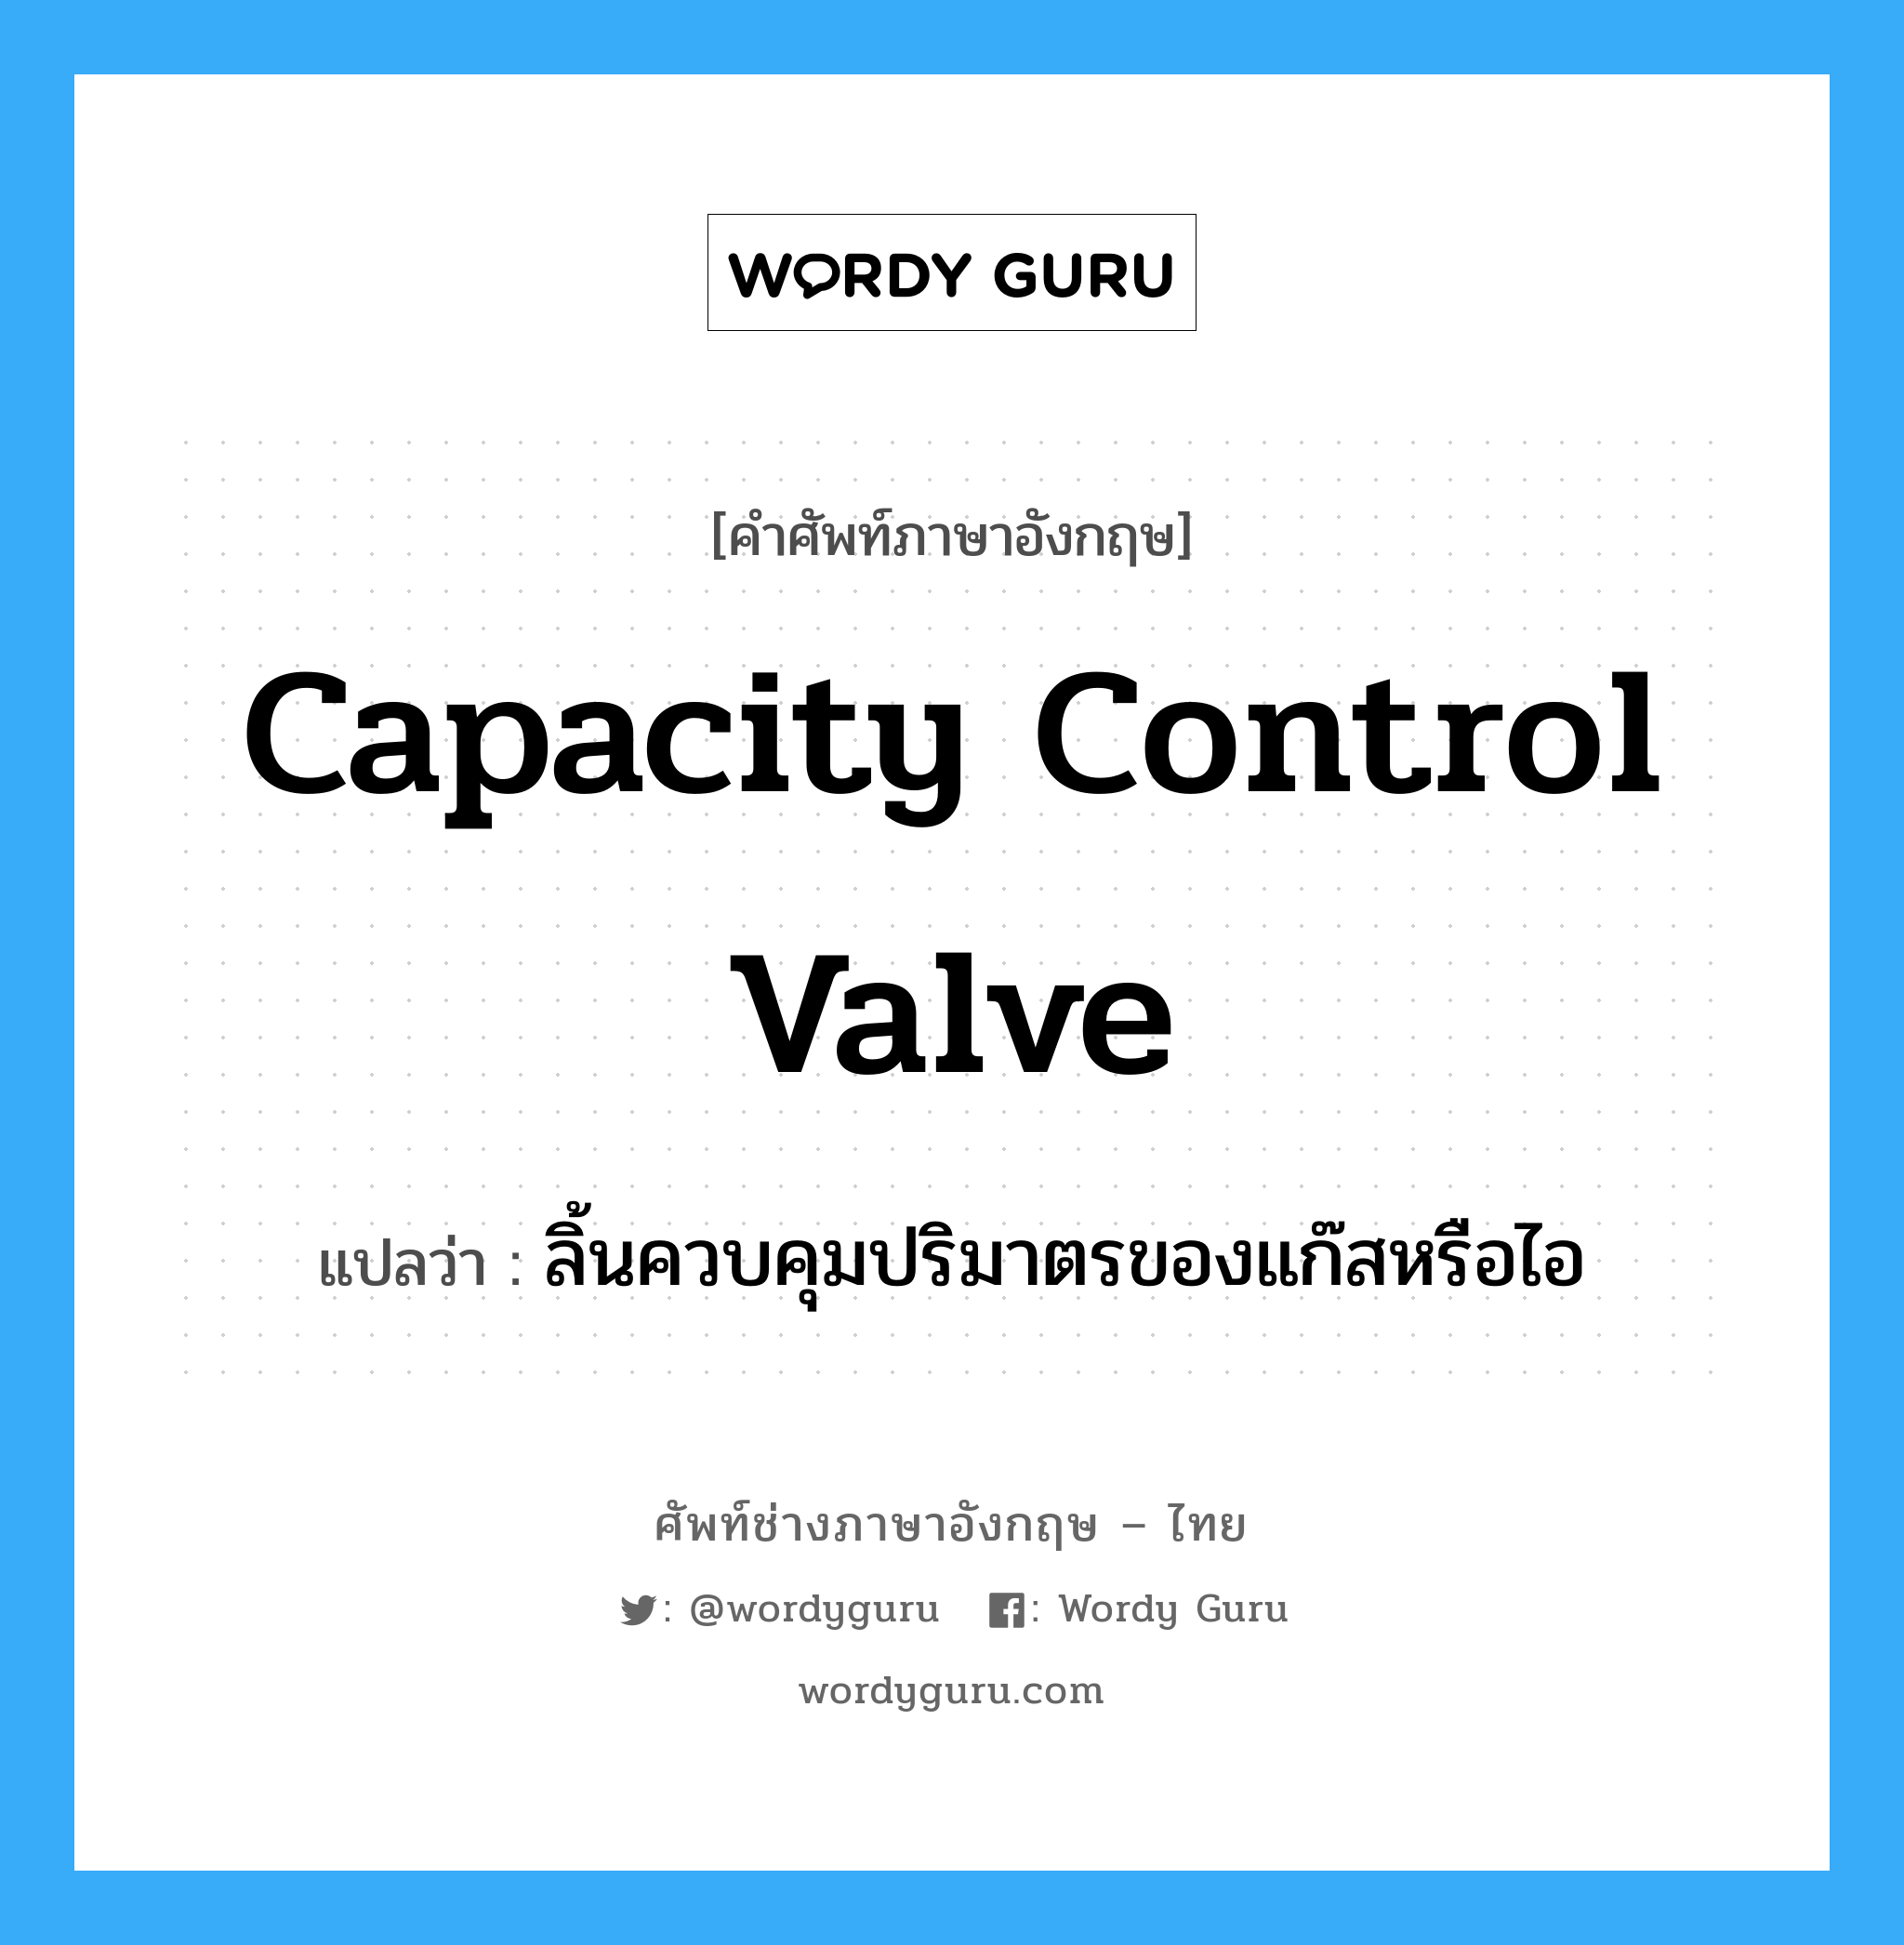 capacity control valve แปลว่า?, คำศัพท์ช่างภาษาอังกฤษ - ไทย capacity control valve คำศัพท์ภาษาอังกฤษ capacity control valve แปลว่า ลิ้นควบคุมปริมาตรของแก๊สหรือไอ